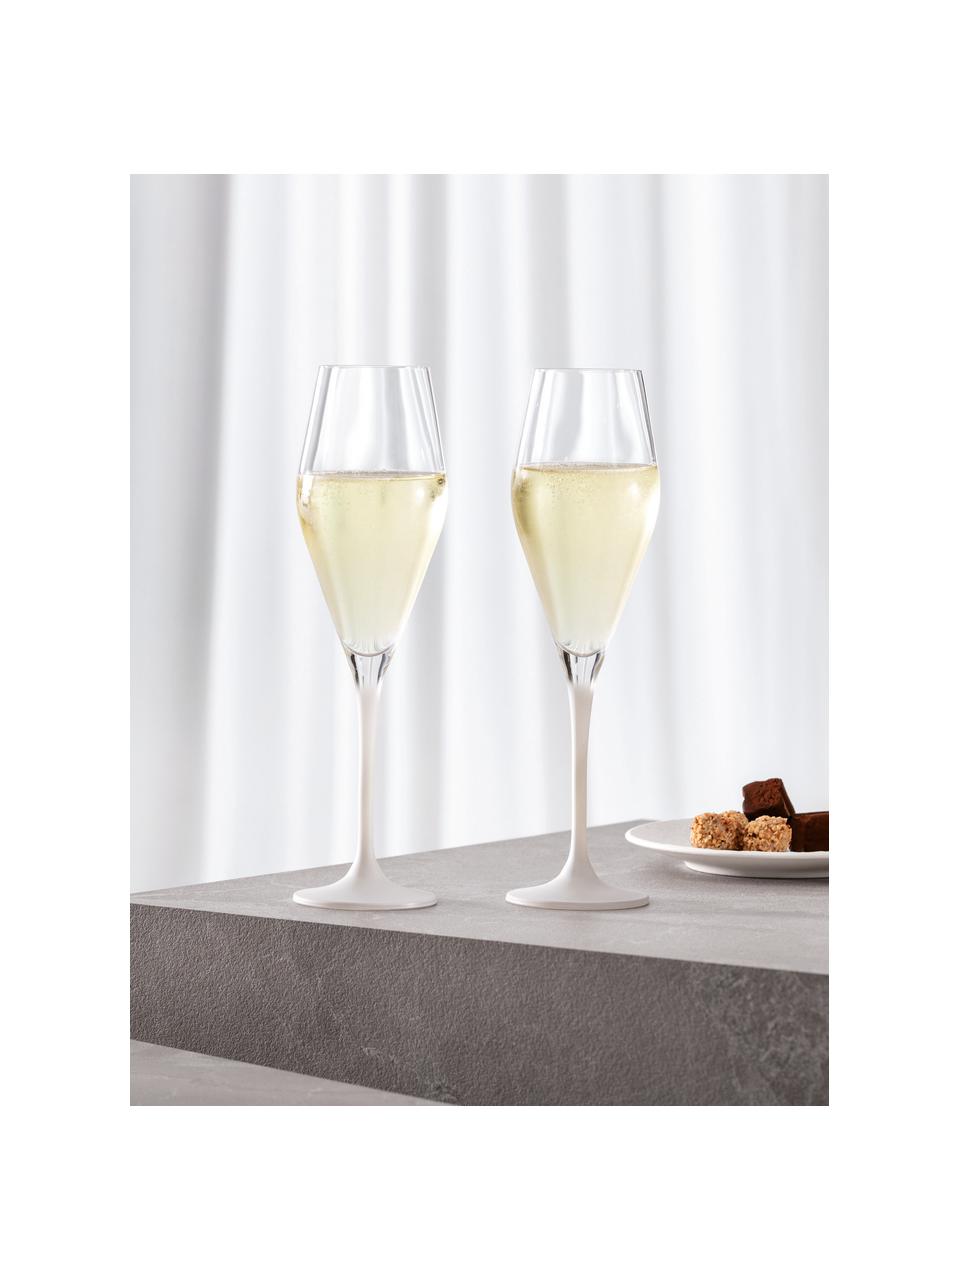 Kieliszek do szampana ze szkła kryształowego Rock, 4 szt., Szkło kryształowe, Transparentny, biały, Ø 7 x W 25 cm, 290 ml